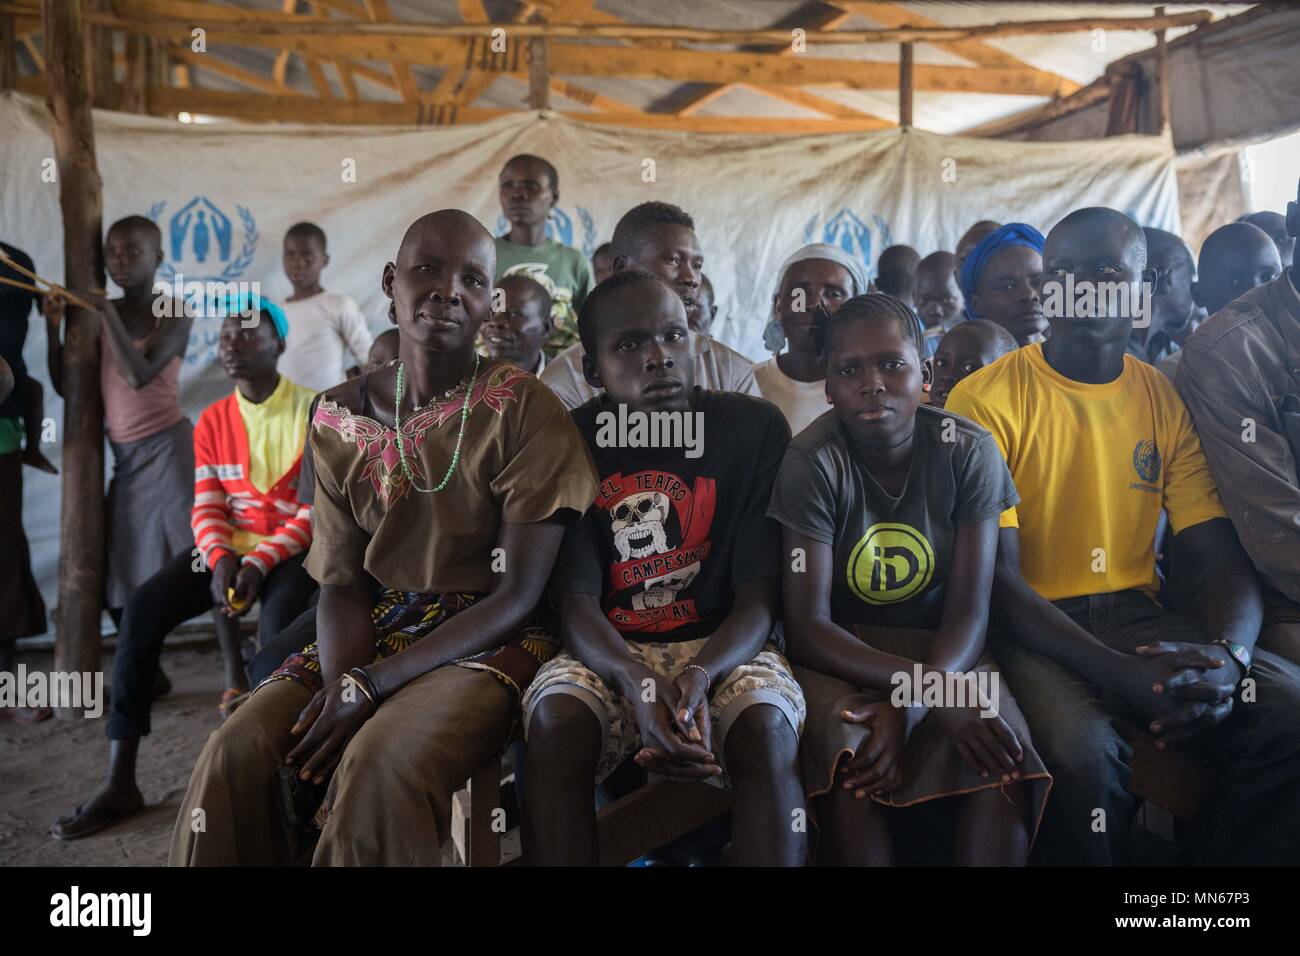 Réfugiés Soudanais du sud vu assis dans une zone d'attente où elles attendent d'être enregistrés par le HCR de devenir officiellement les réfugiés. Kuluba le centre d'accueil des réfugiés est l'un des nombreux centres d'accueil dans le nord de l'Ouganda spécialement construit pour gérer les centaines de milliers de réfugiés sud-soudanais afflux. Le centre d'accueil est où les réfugiés sont enregistrés par le HCR en tant que réfugiés officiellement et qu'ils sont rester ici pendant 24 à 48 heures avant d'être transférée à l'installation des réfugiés plus permanente. Banque D'Images